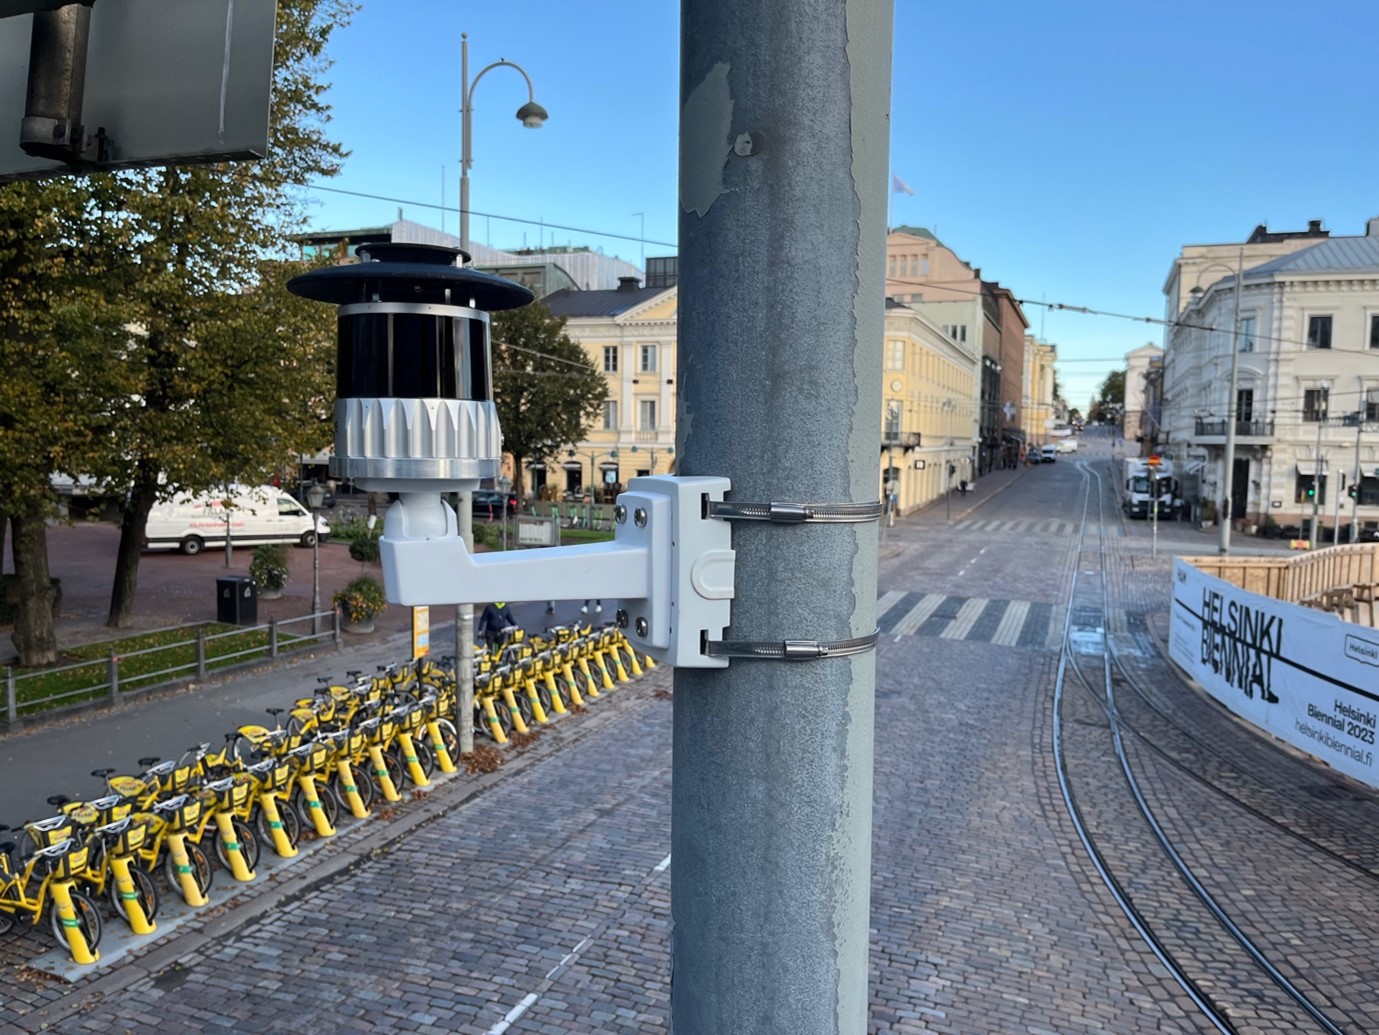 LIDAR sensors in Helsinki